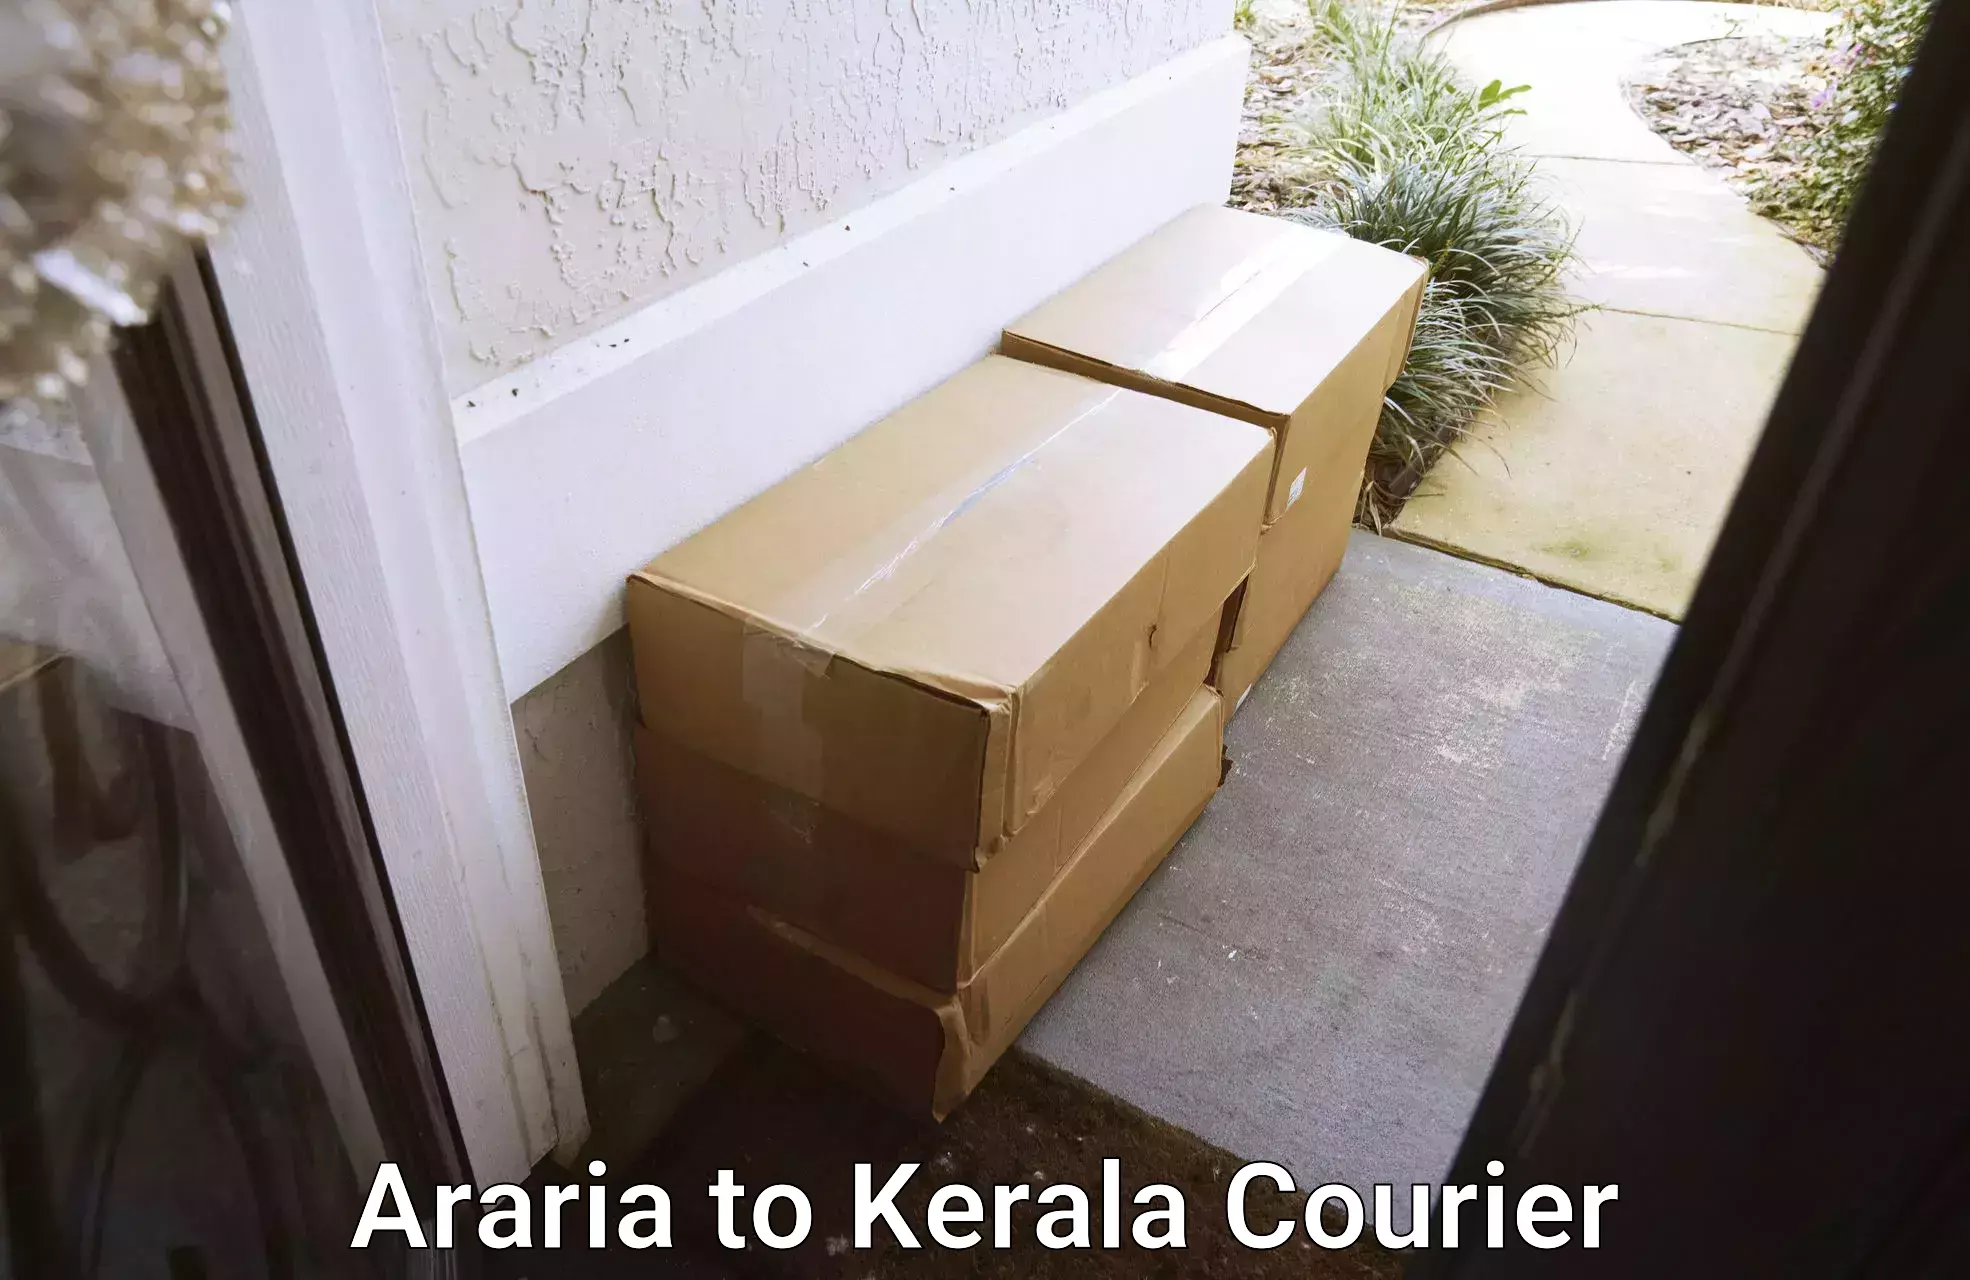 Home shifting experts Araria to Kerala